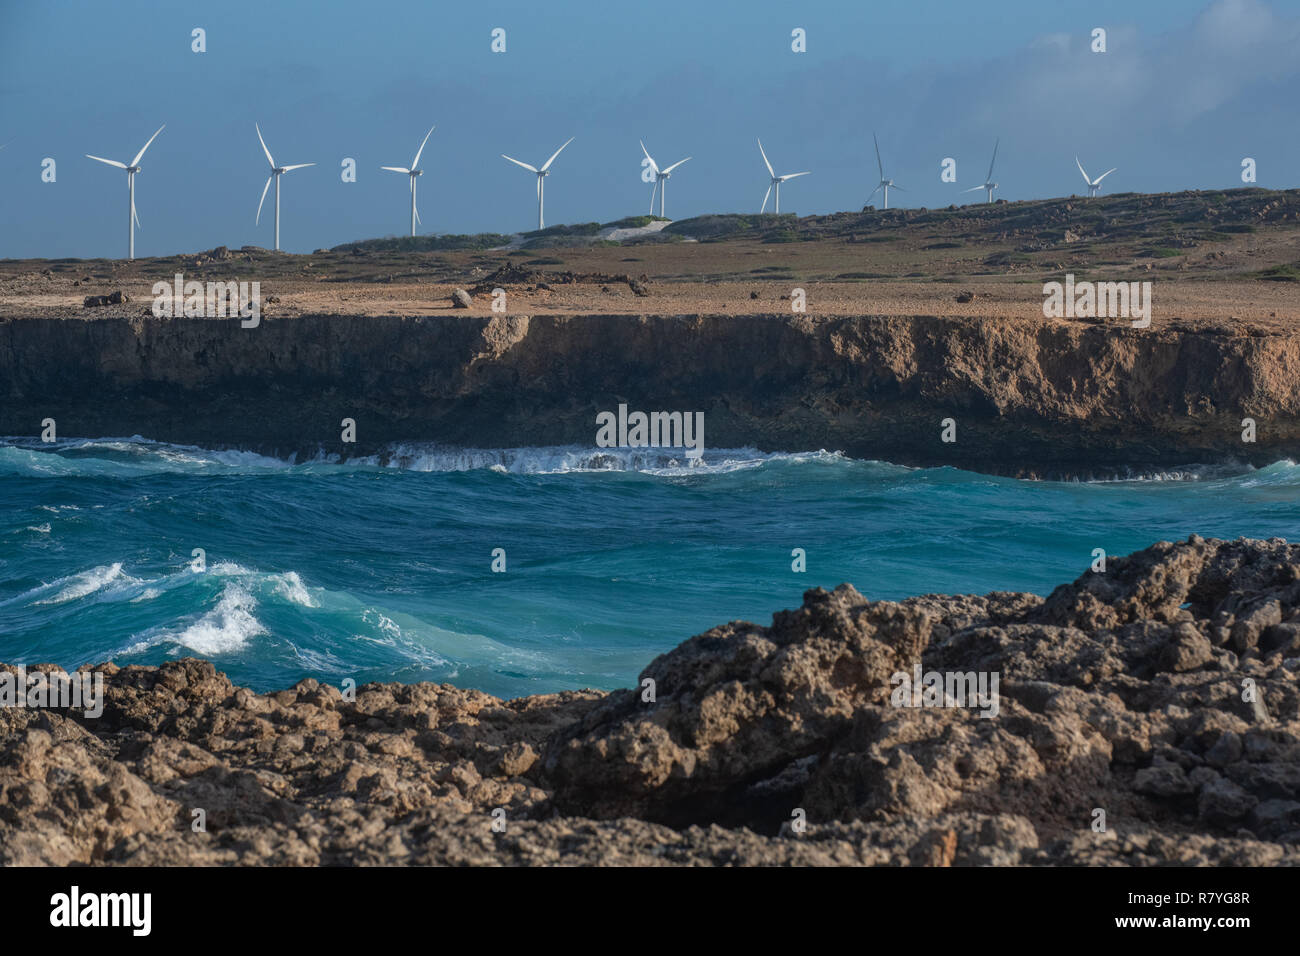 La durabilité Windmill farm Aruba dans le Parc national Arikok - effort de l'énergie éolienne, éoliennes sous forme d'une ferme éolienne d'accroître l'énergie renouvelable Banque D'Images